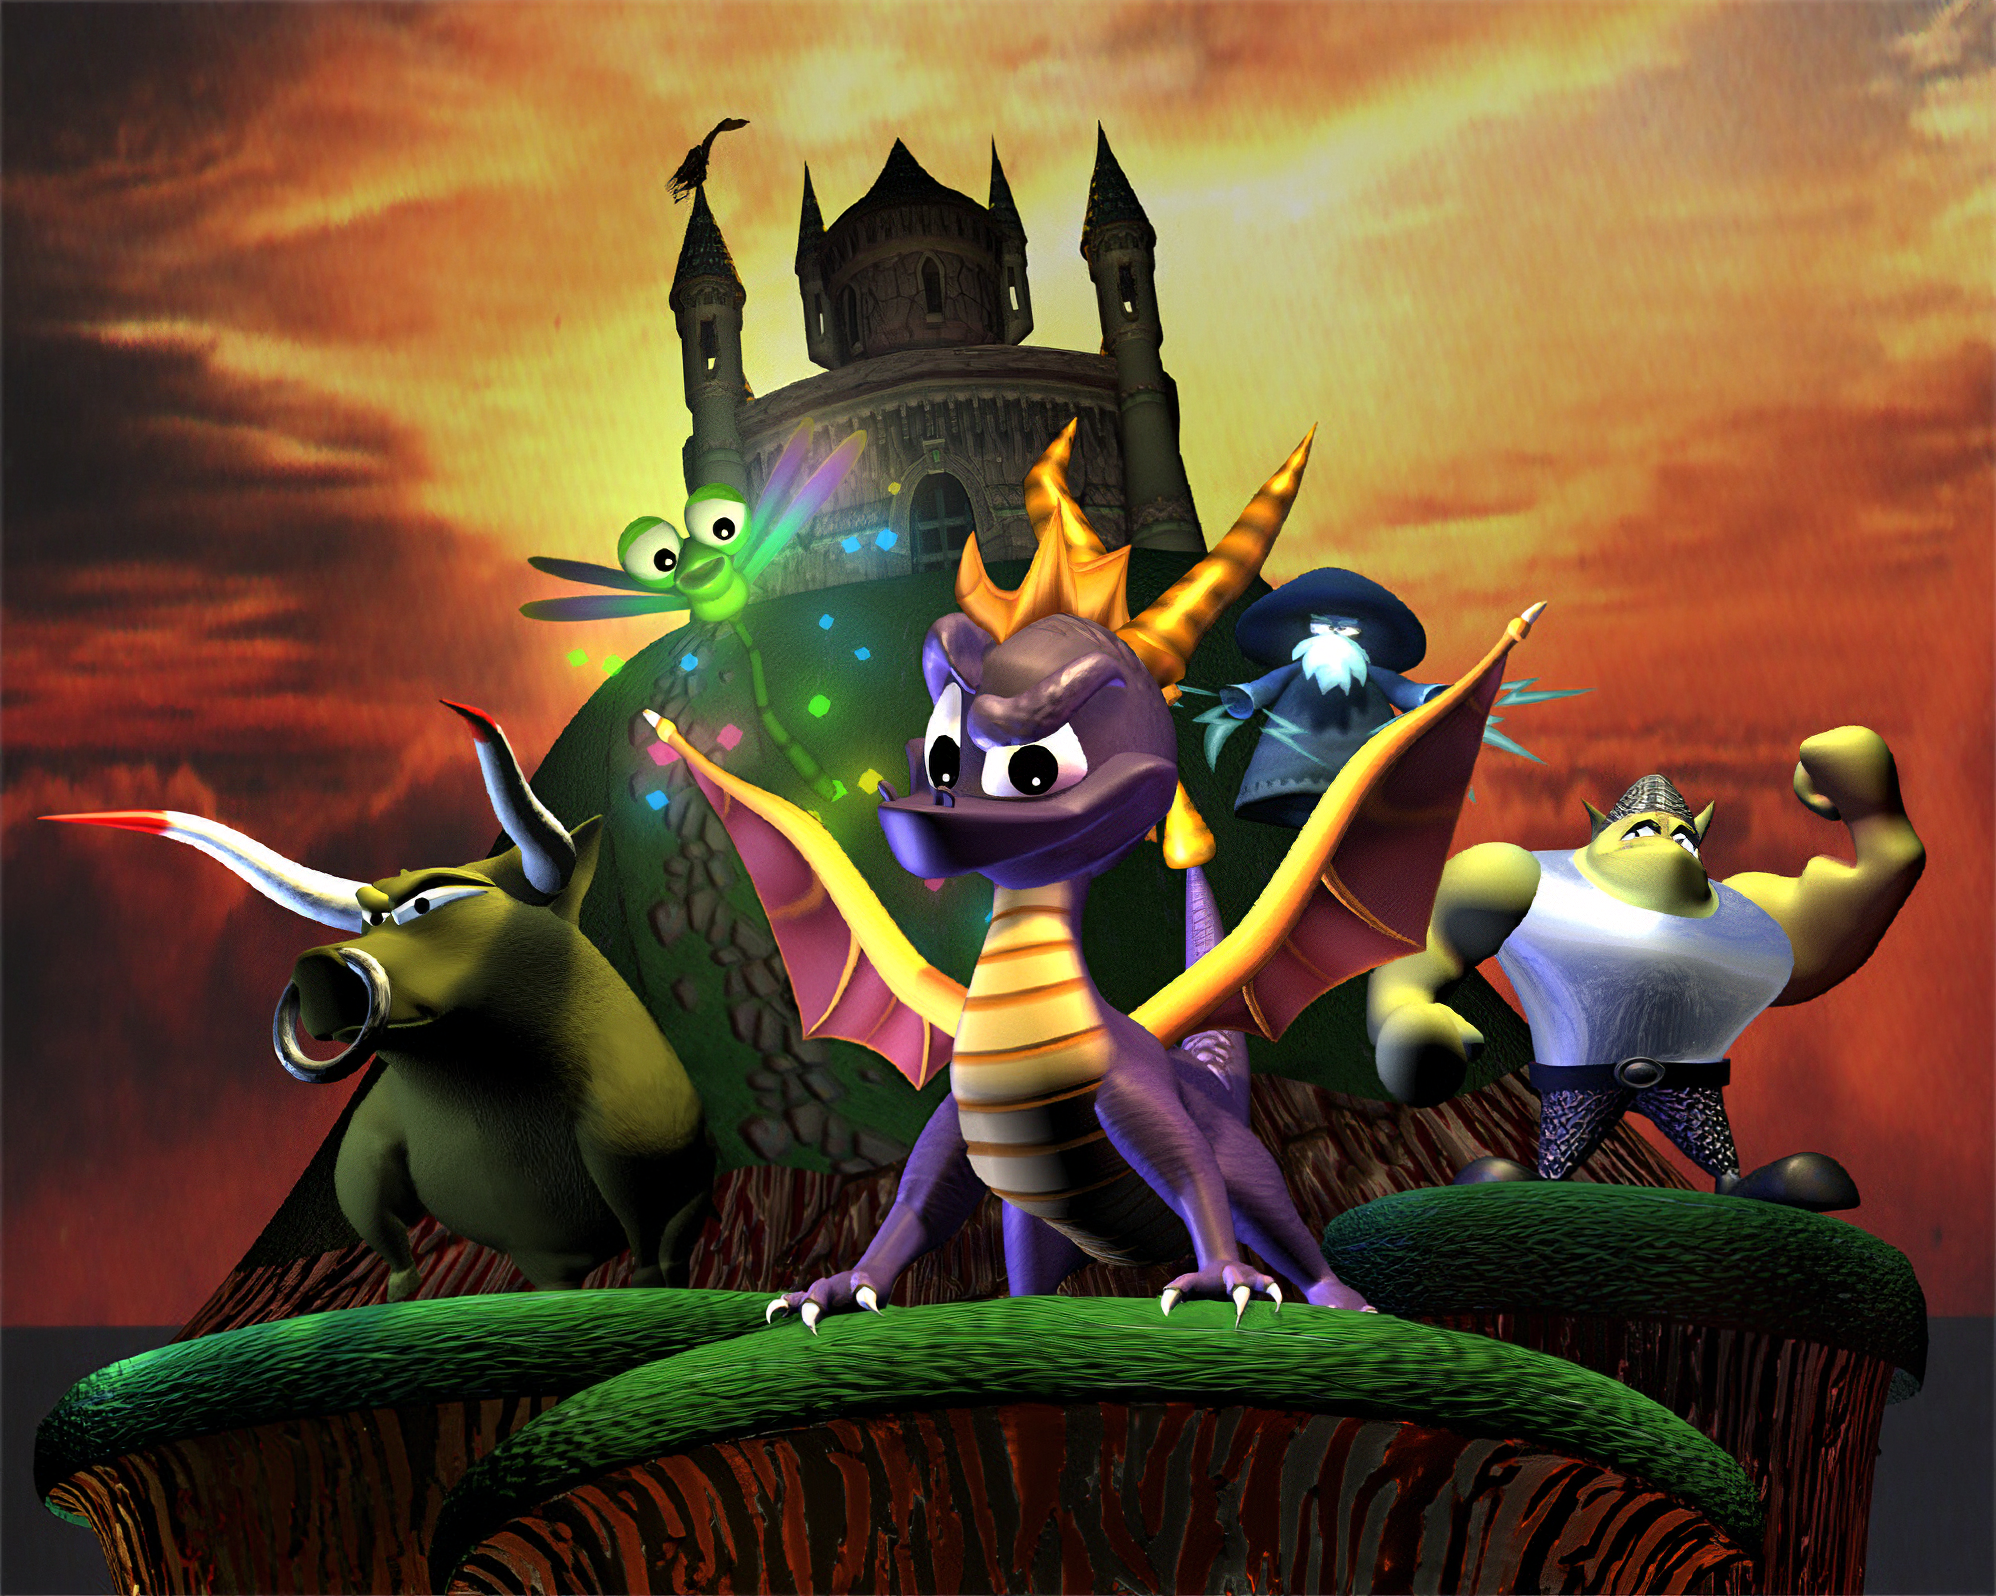 Dragão roxo está de volta! Spyro Reignited Trilogy já está disponível